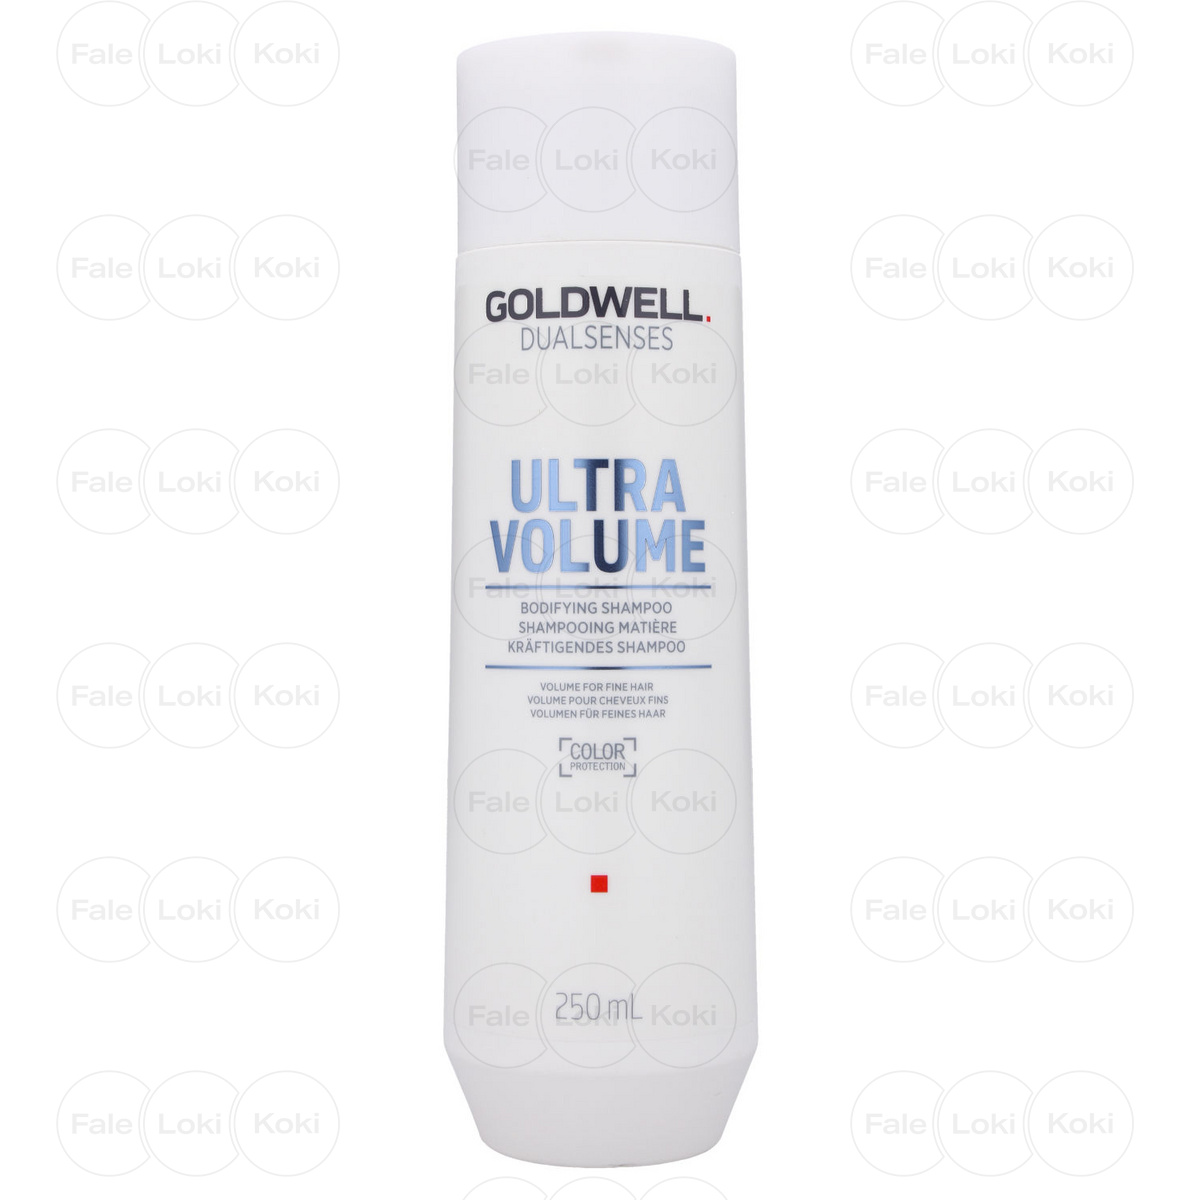 goldwell szampon zwiększający objętość